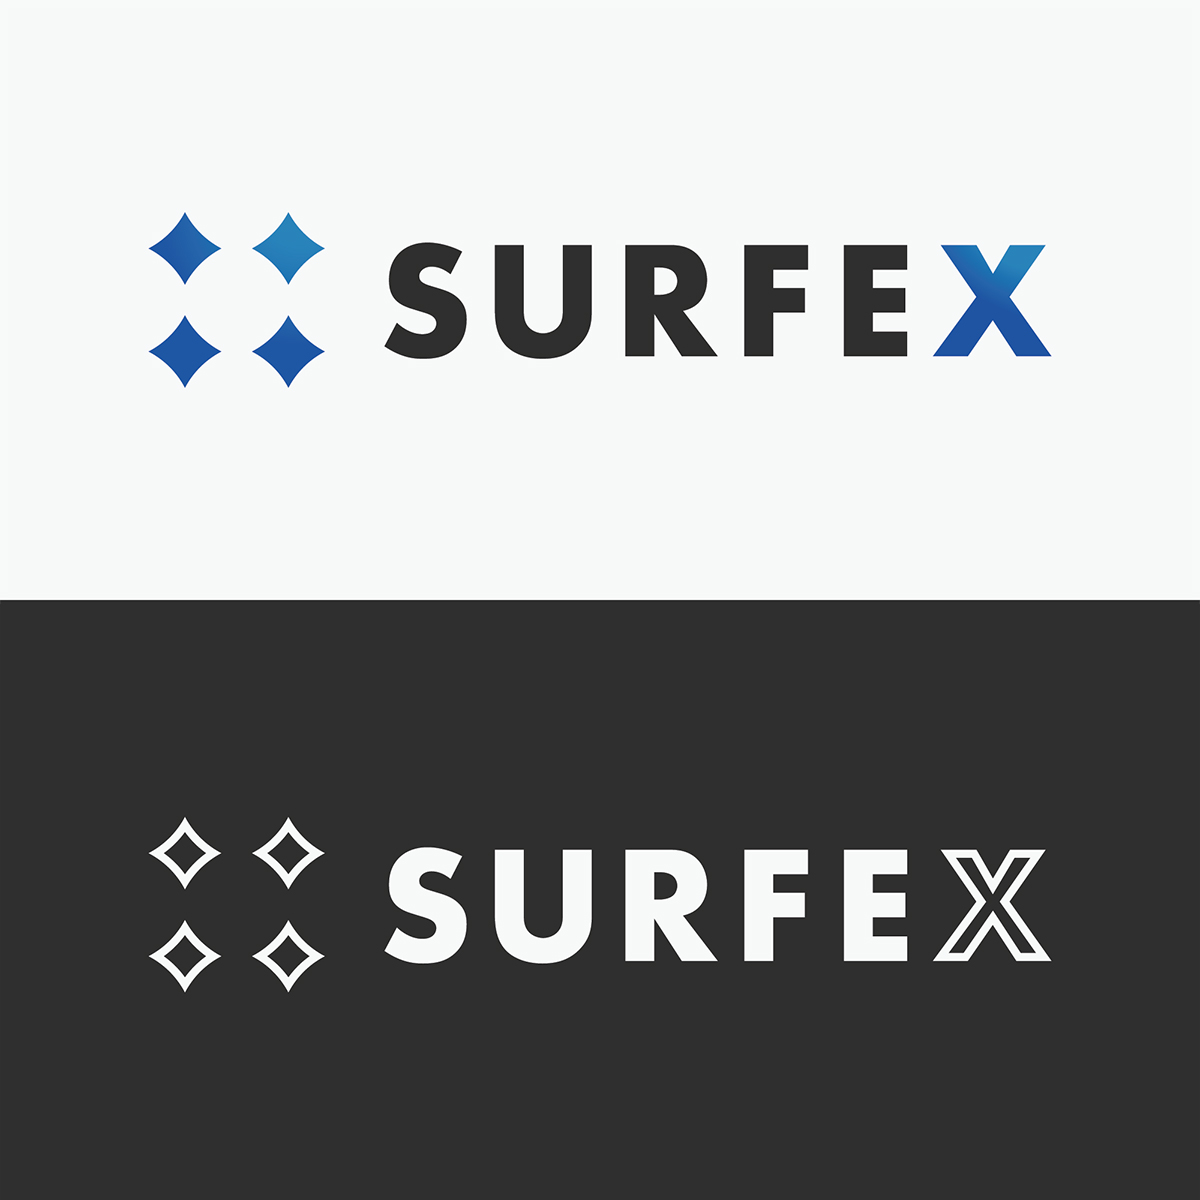 Dve verzie loga pre firmu SURFEX.